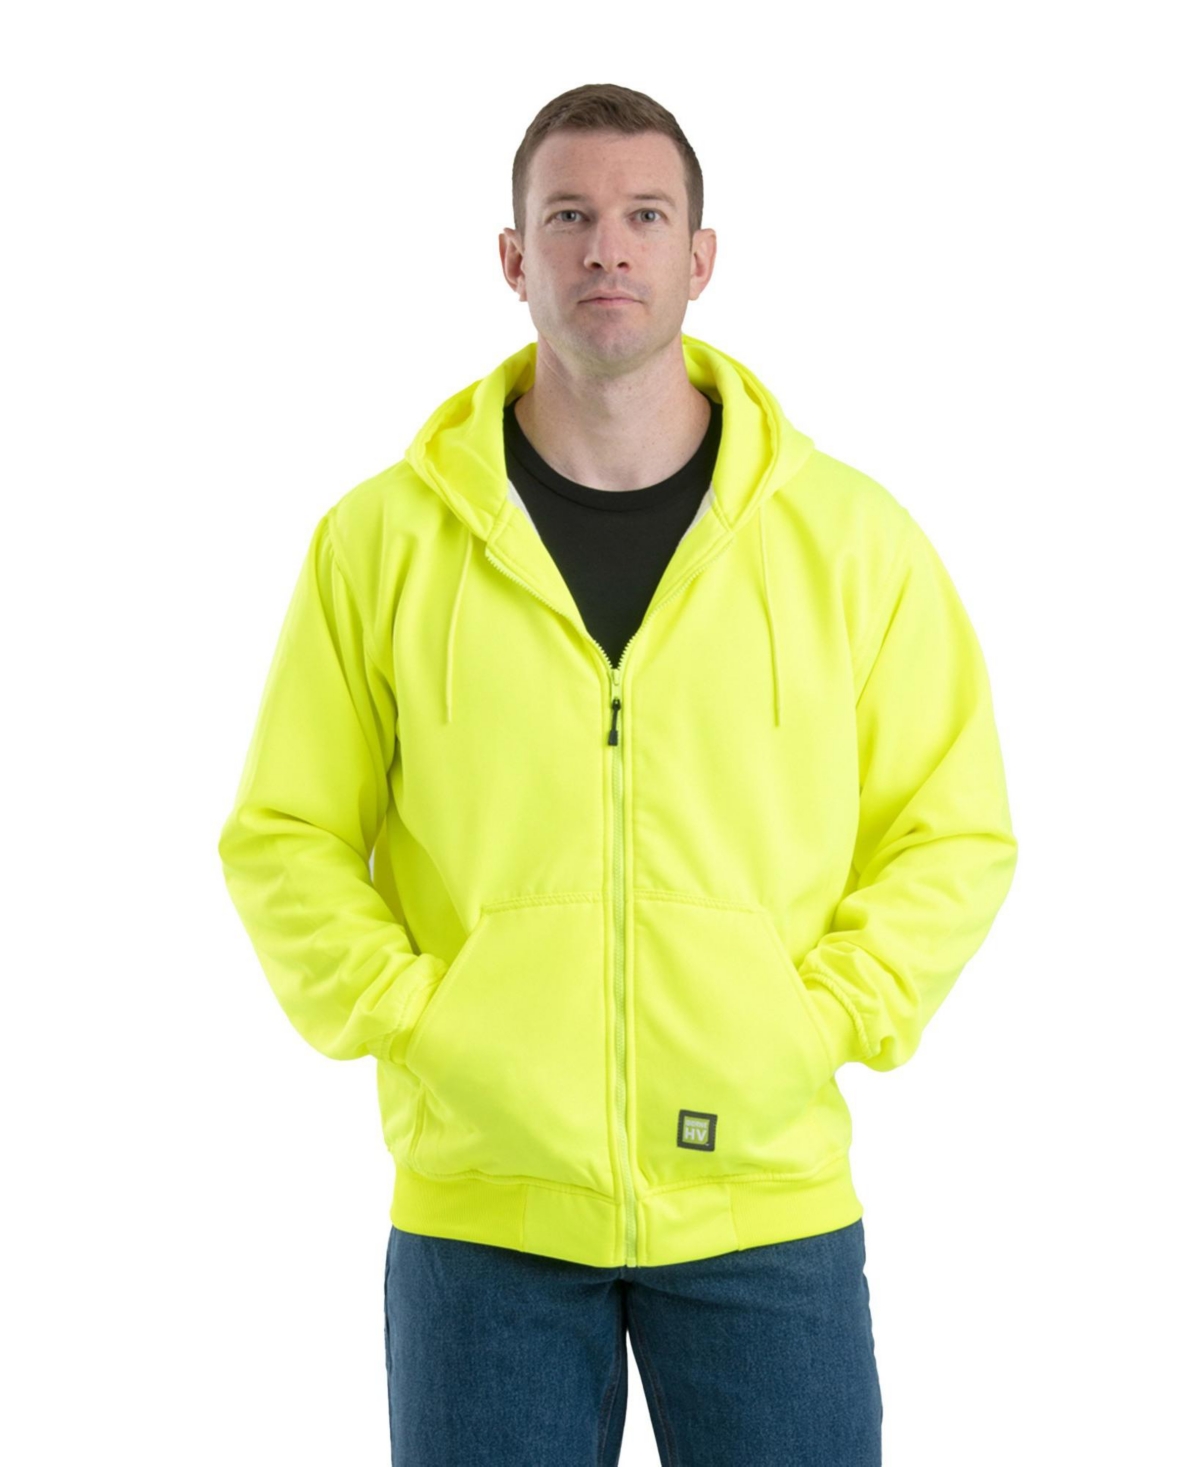 Men's Hi Vis Thermal-Lined Hooded Sweatshirt - Yellow